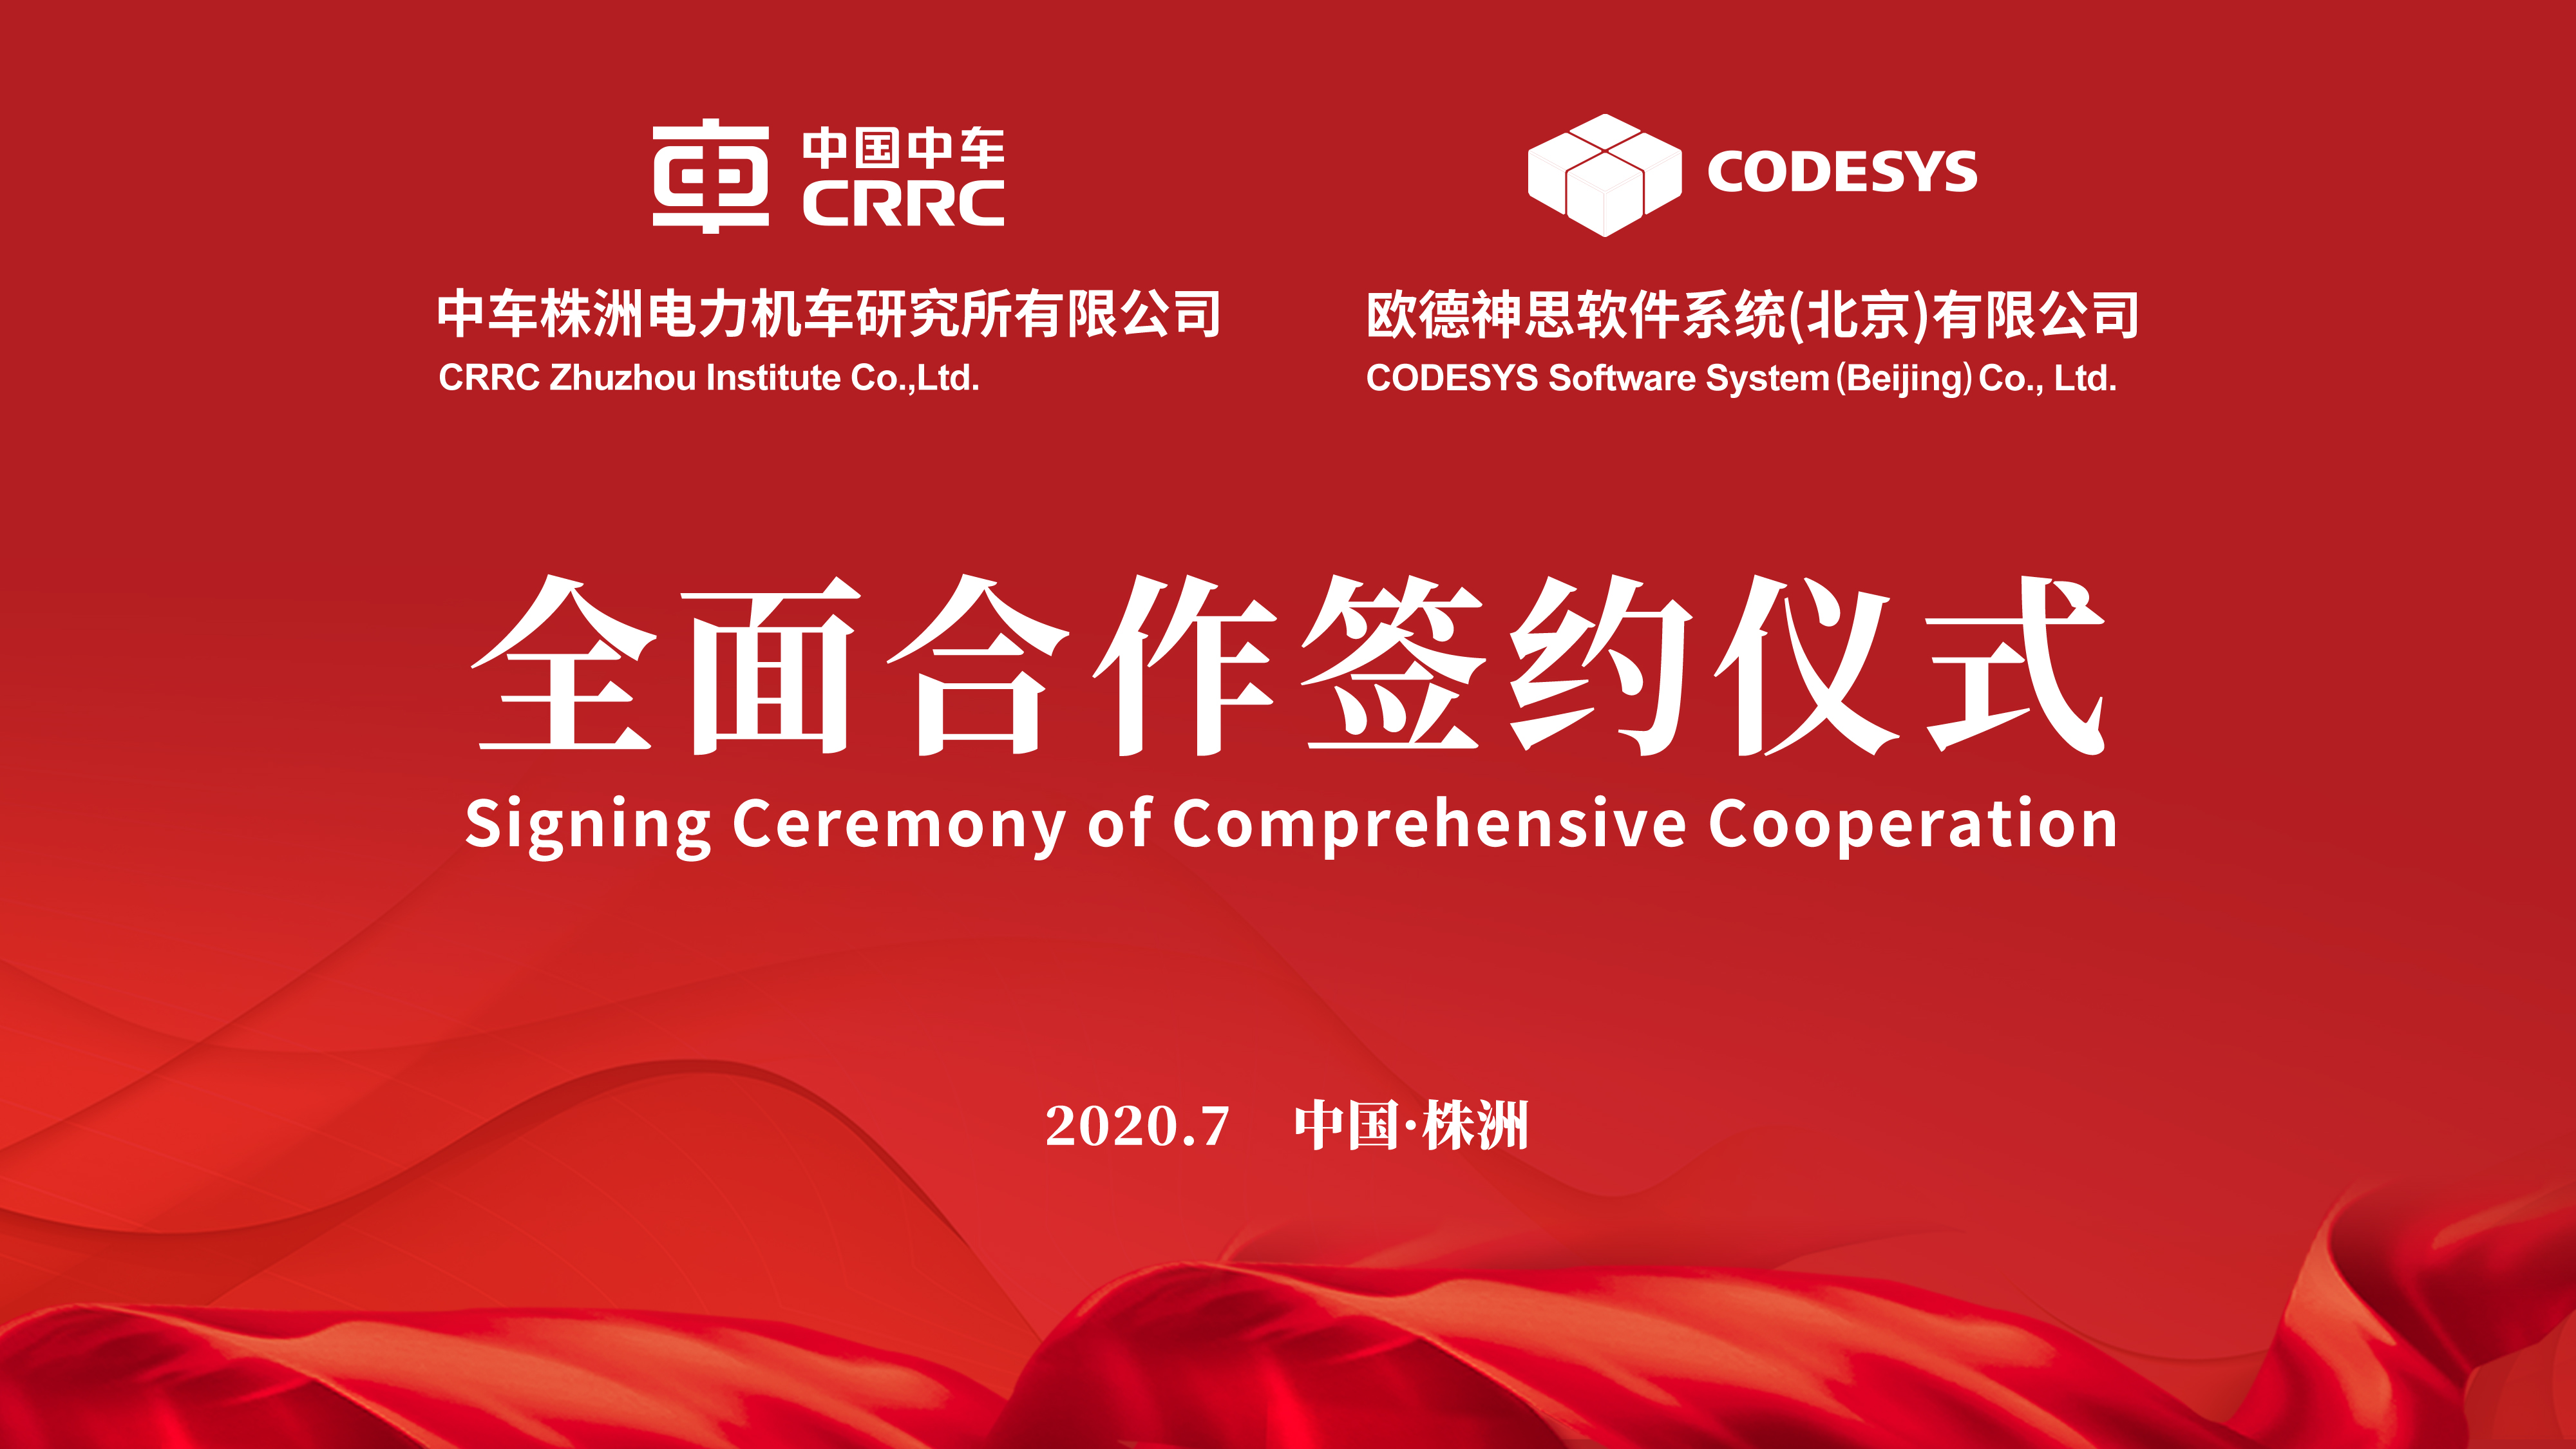 德國CODESYS軟件集團與中車株洲電力機車研究所有限公司 簽署全面合作協議